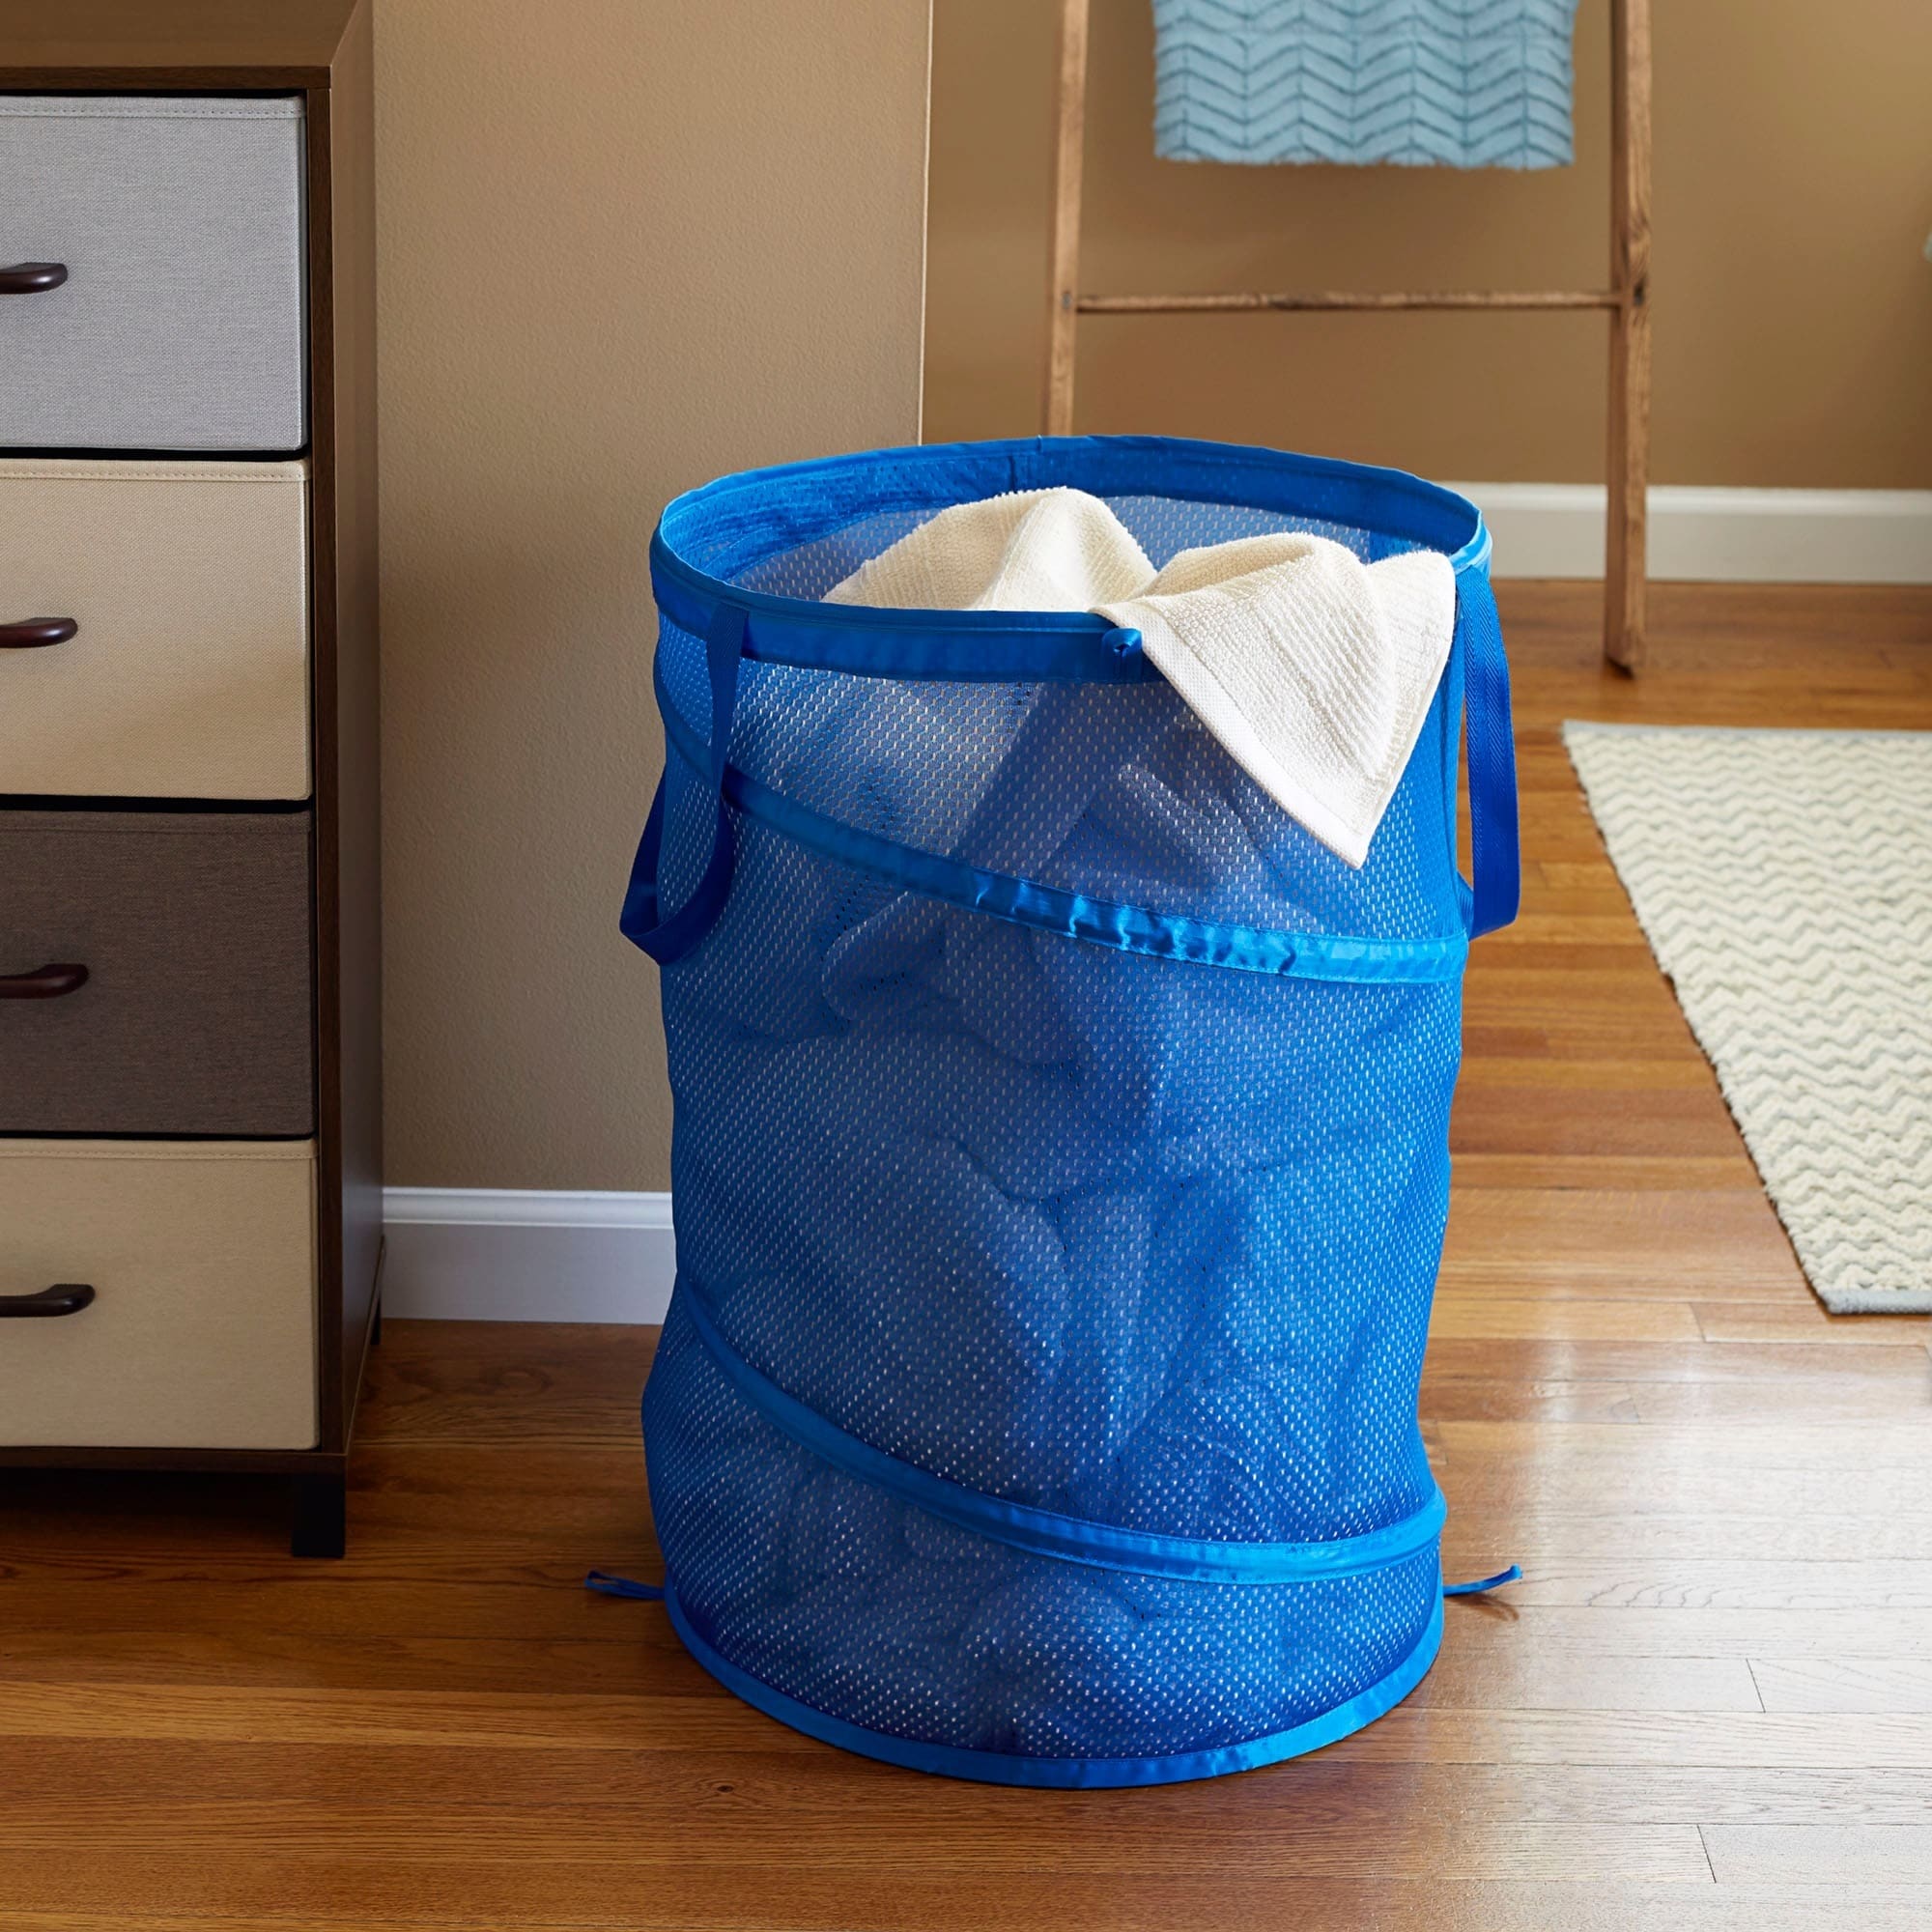 NY PRADA MARFA Laundry Bag By Michelle Parascandolo - 28 x 36